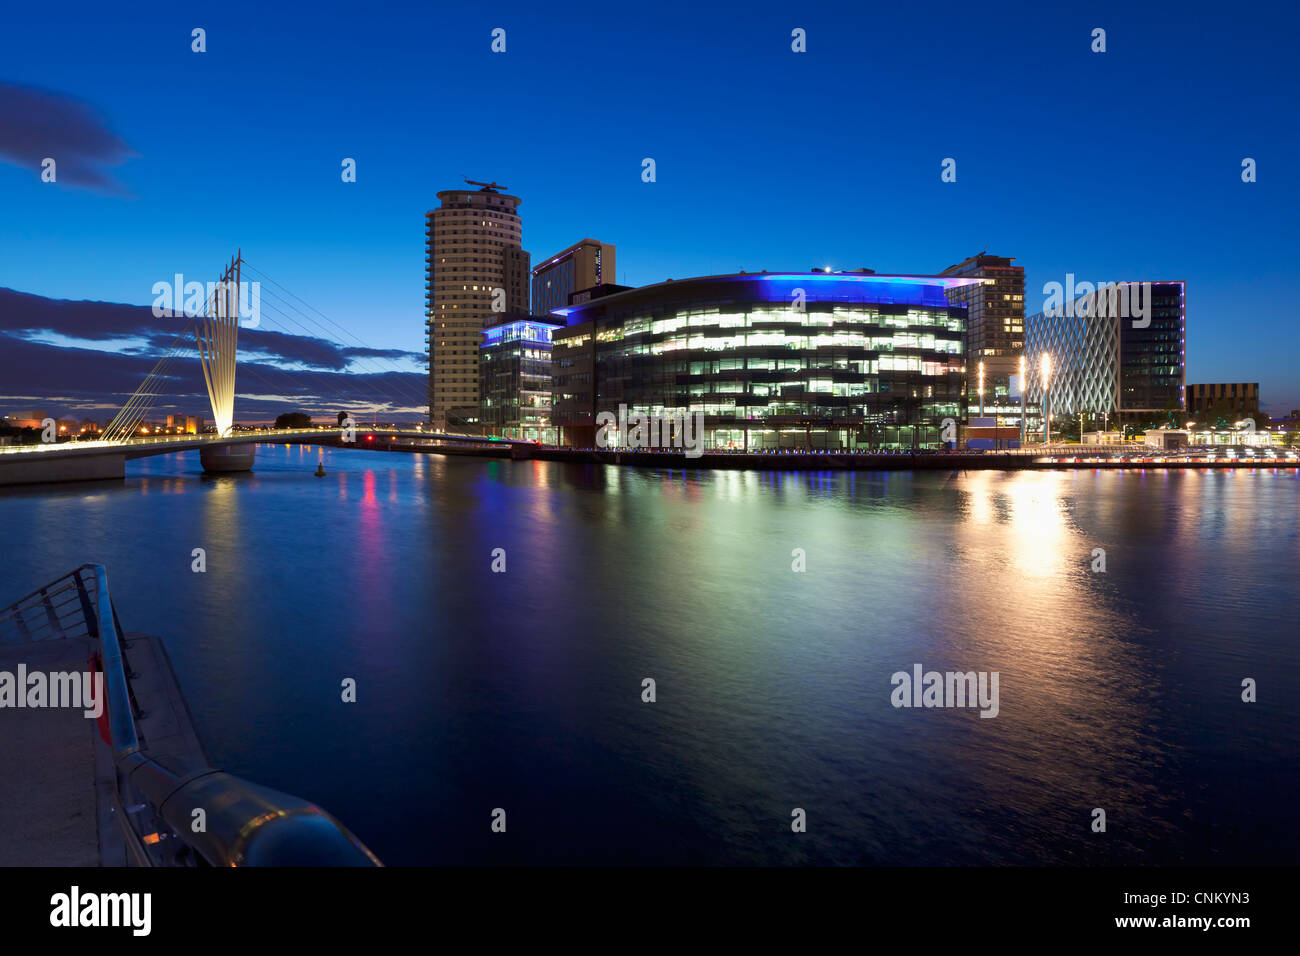 La ciudad de los medios de comunicación del Reino Unido a la noche, Salford, Manchester, Inglaterra Foto de stock